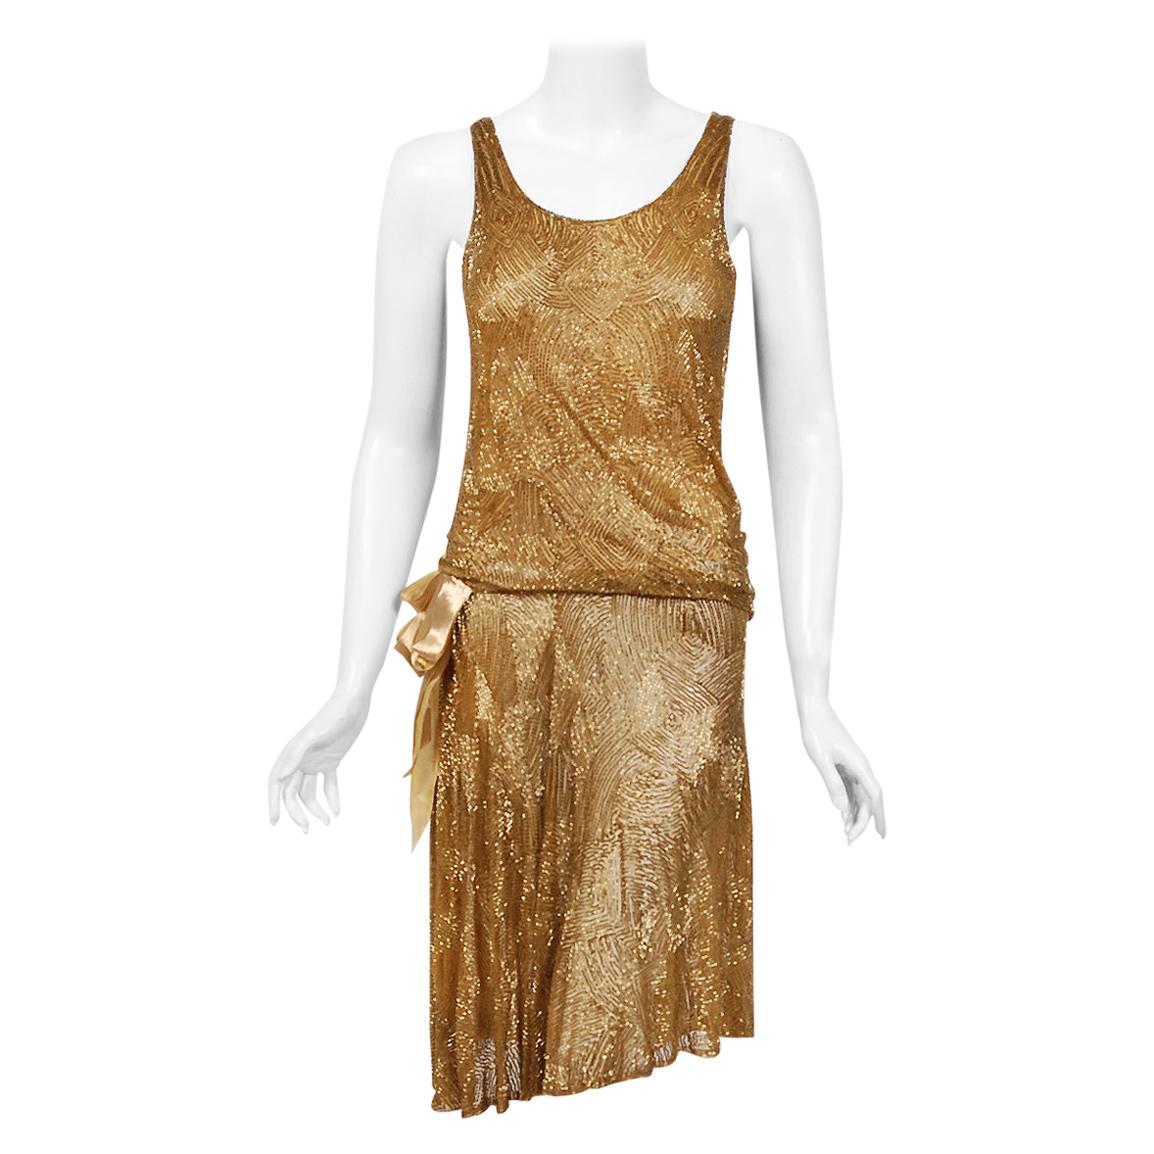 1926 Yvonne Paris Couture Gold Beaded Cotton-Net Asymmetric Deco Flapper Dress